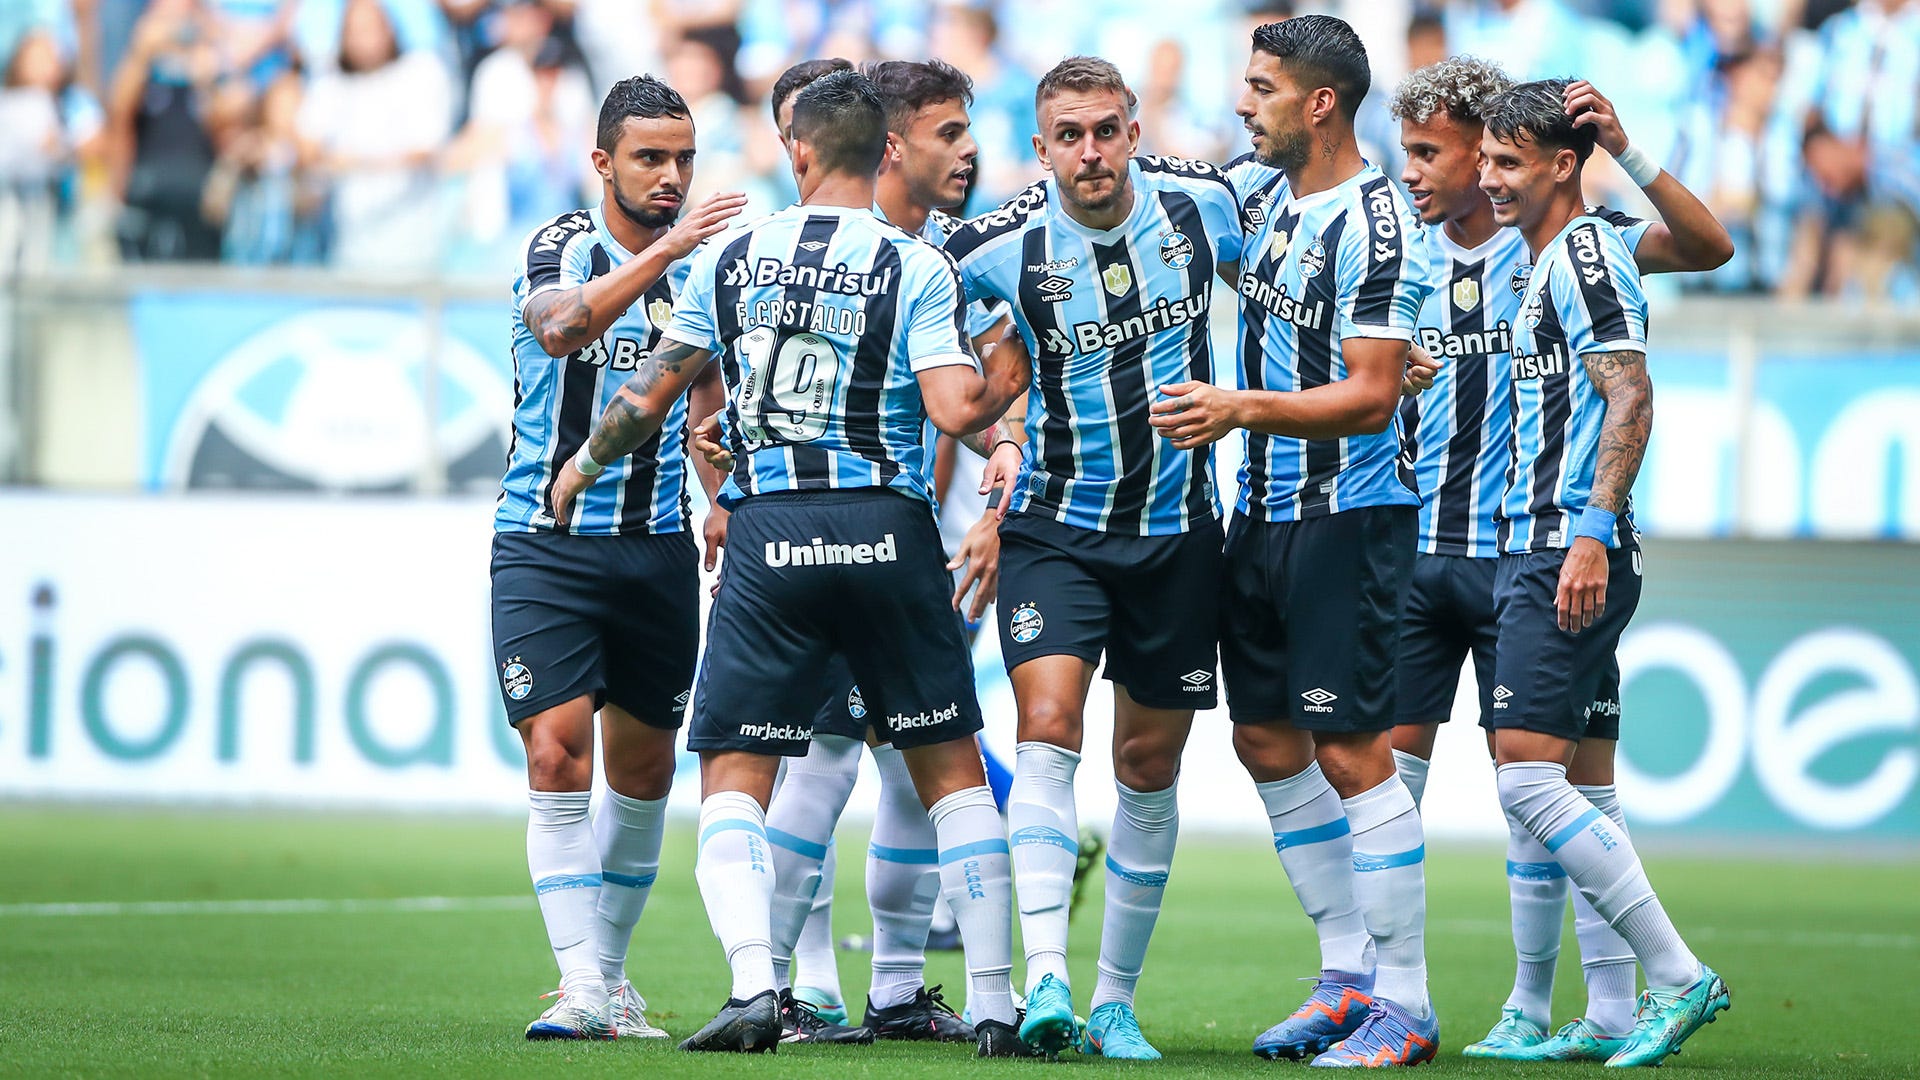 Grêmio vs Náutico: A Clash of Titans